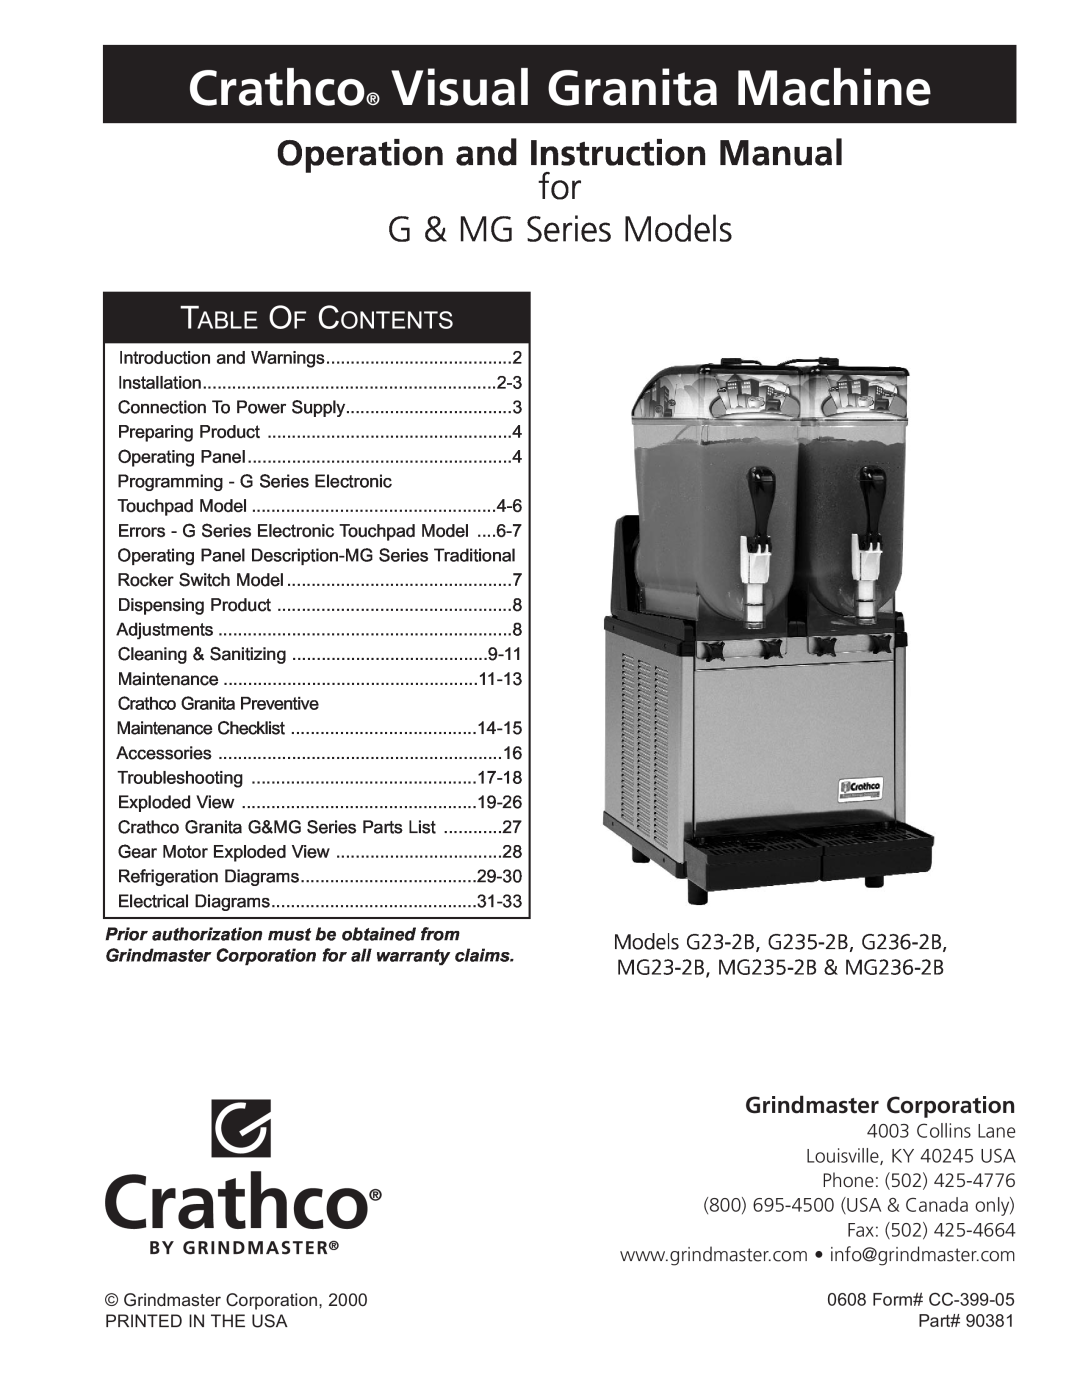 Grindmaster MG23-2B instruction manual Crathco Visual Granita Machine, for G & MG Series Models, Table Of Contents 